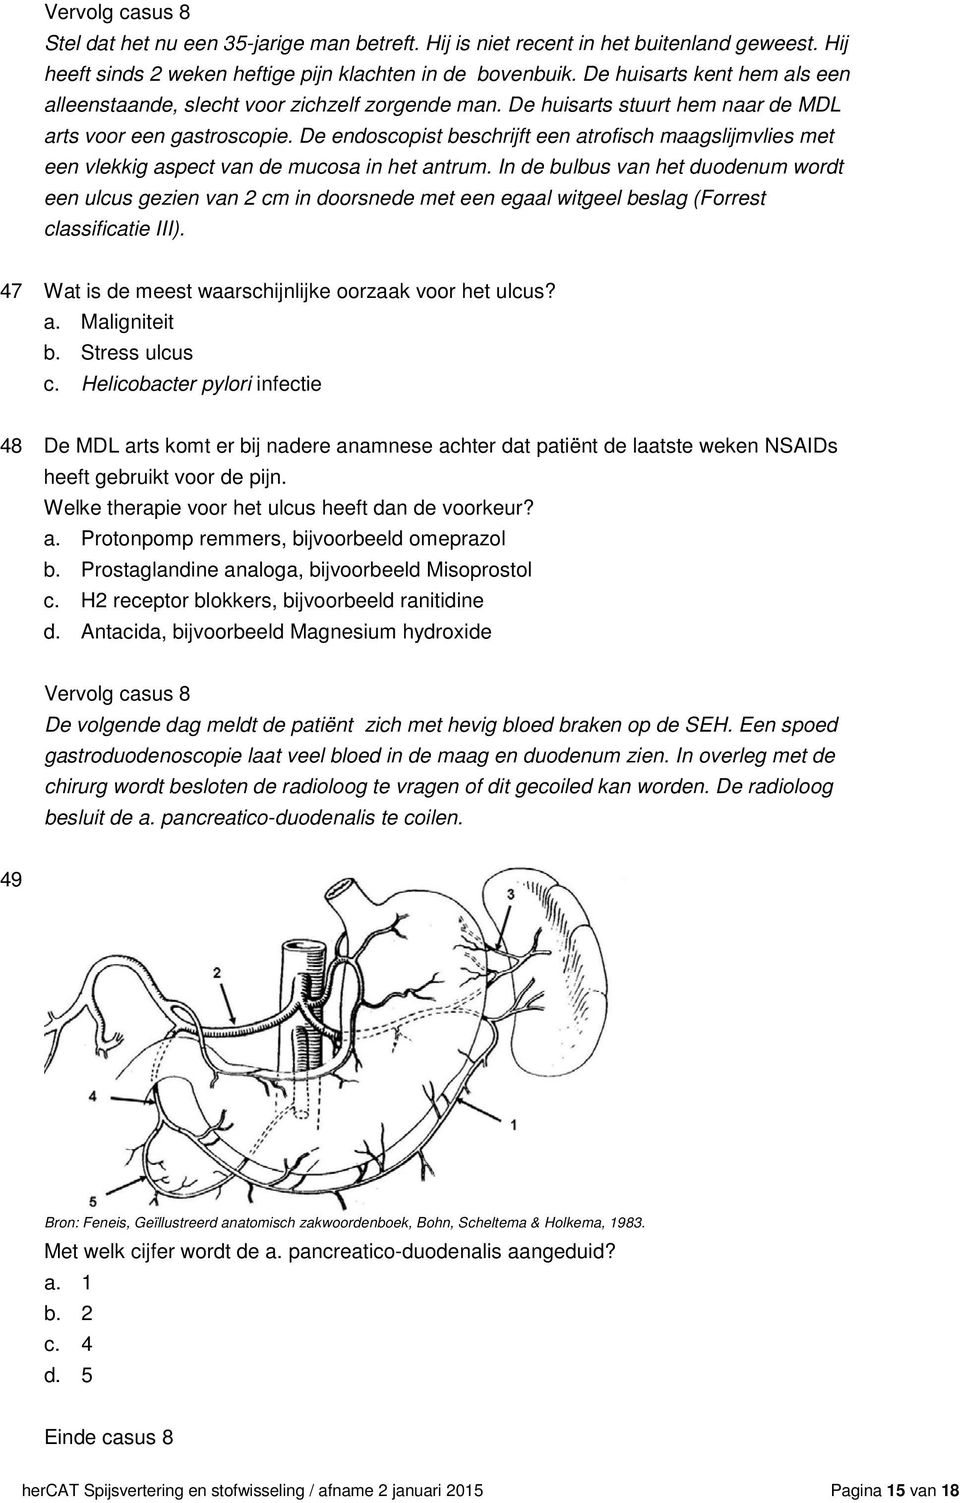 De endoscopist beschrijft een atrofisch maagslijmvlies met een vlekkig aspect van de mucosa in het antrum.